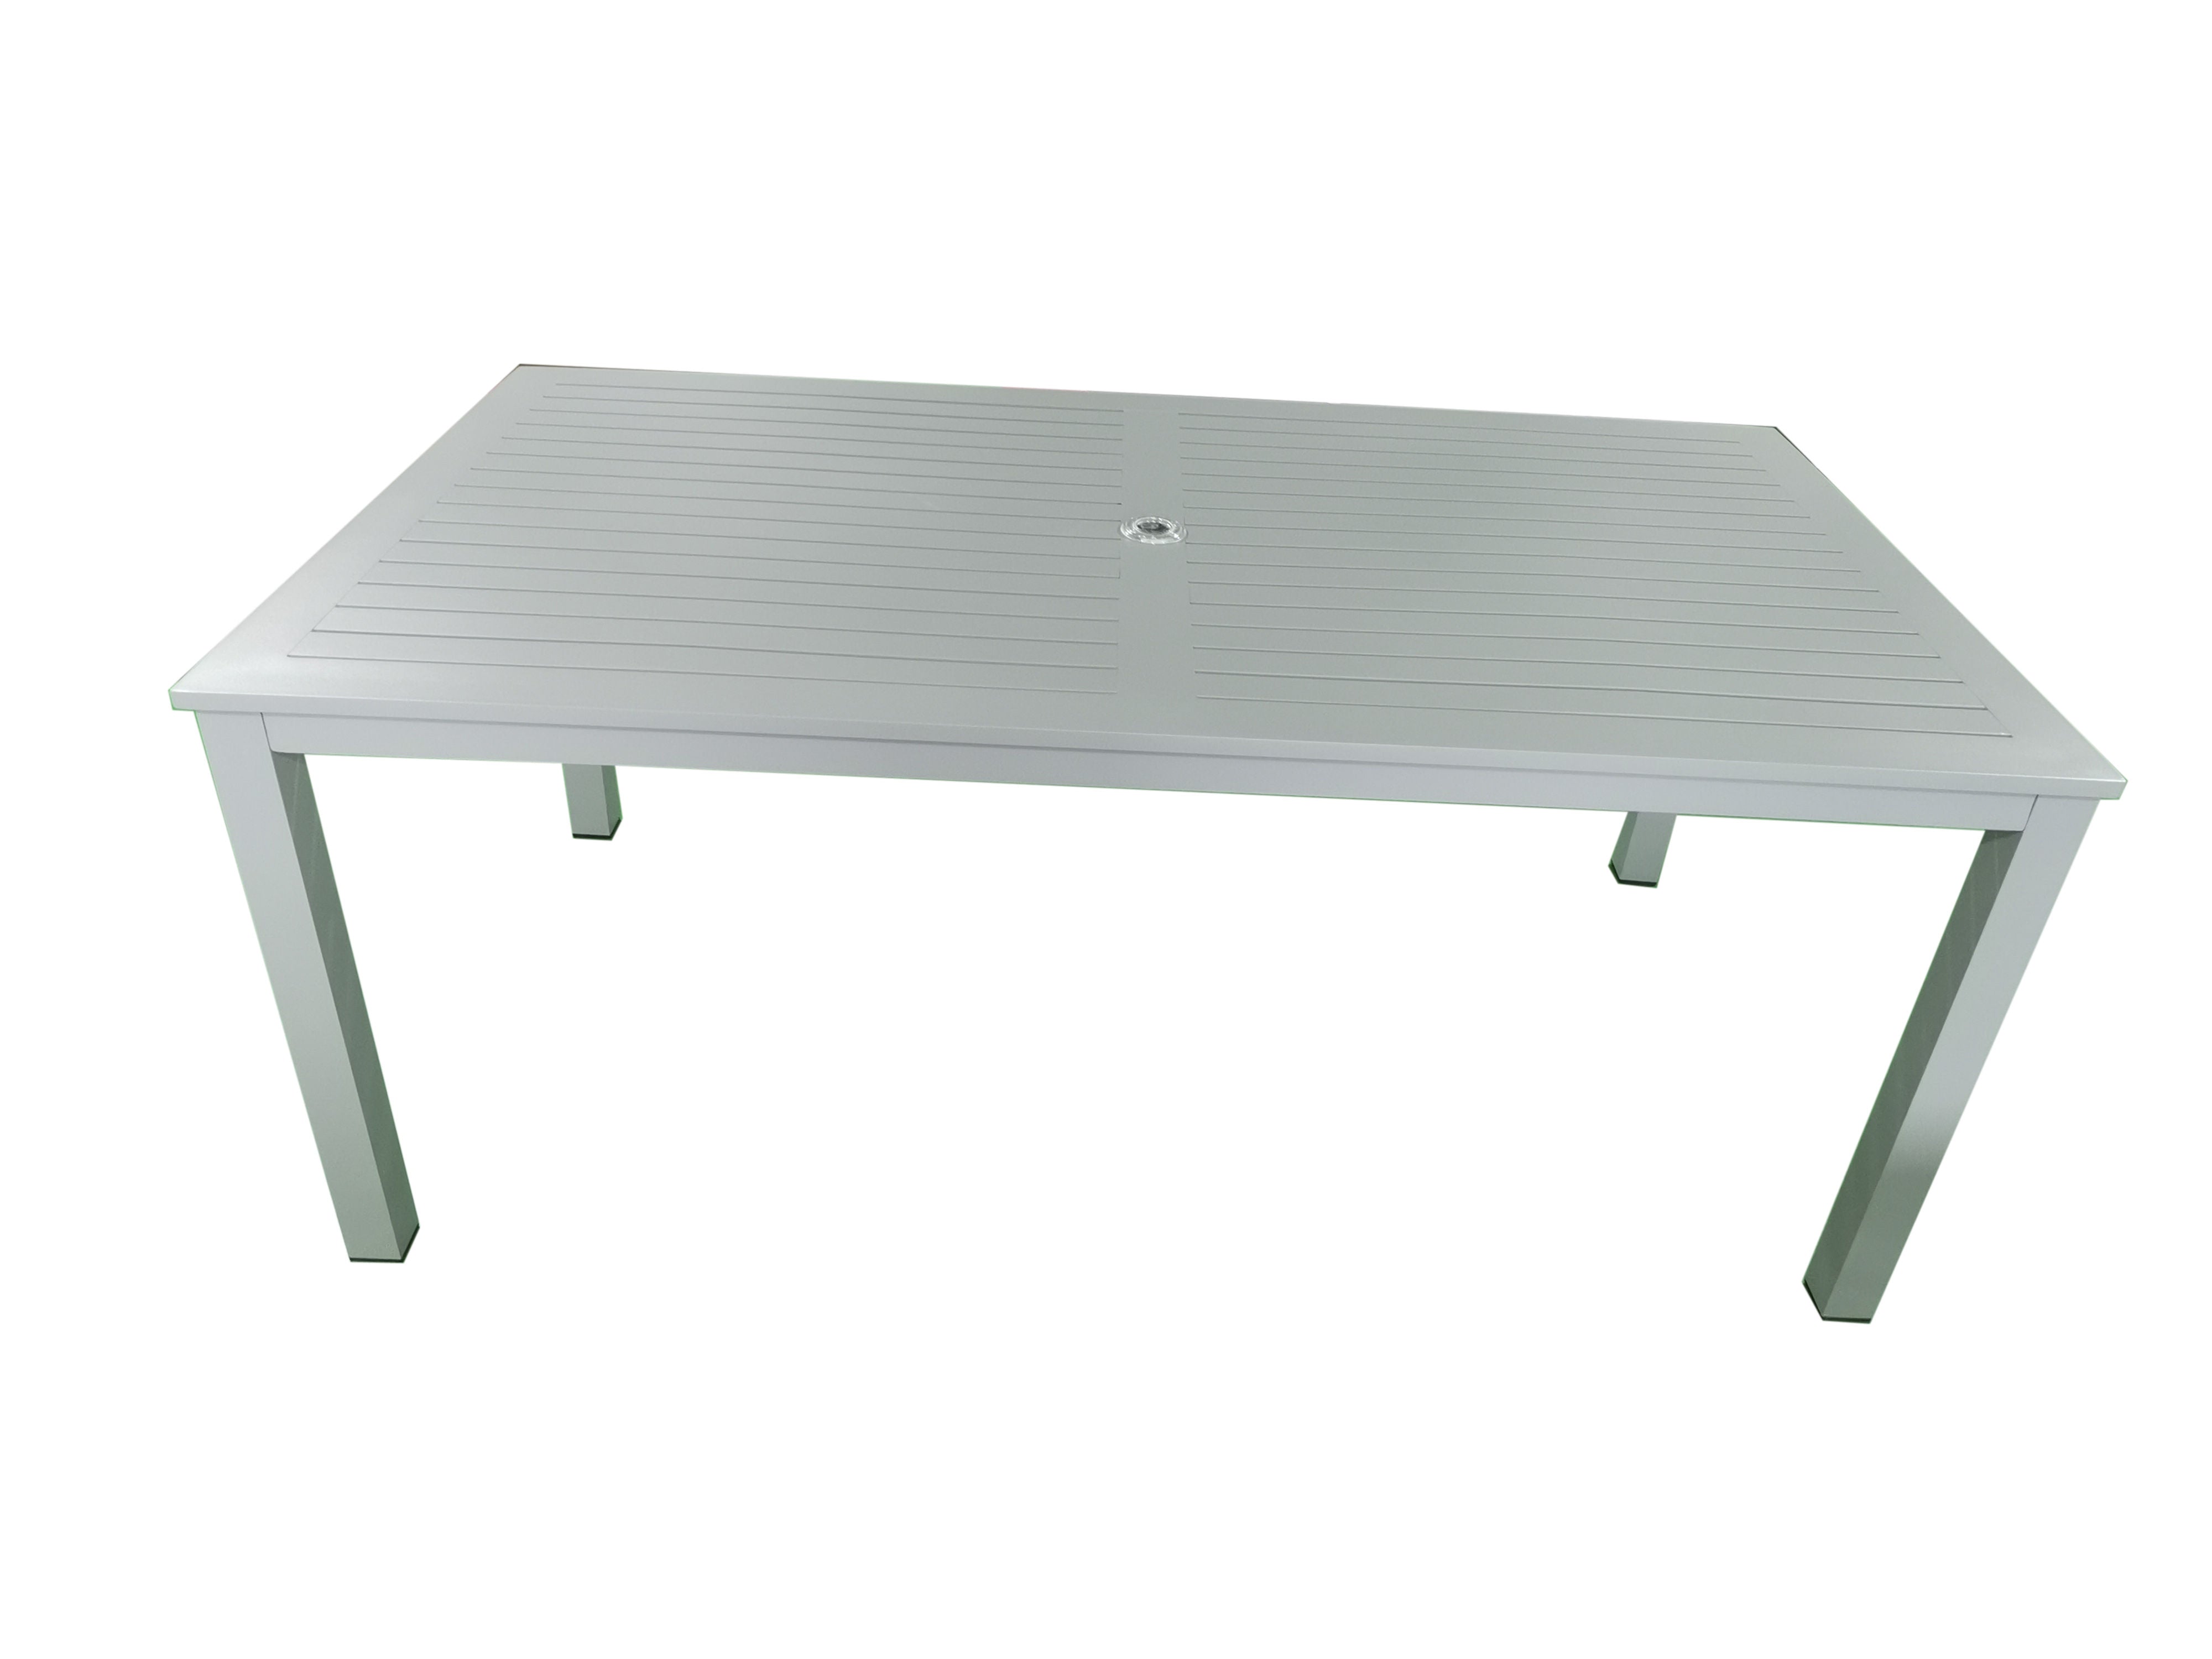 MOSS MOSS-T304GP - Akumal Collection,  Rectangular table aluminum light grey with light grey aluminum slats and umbrella hole 60" x 38" x H 29,1"